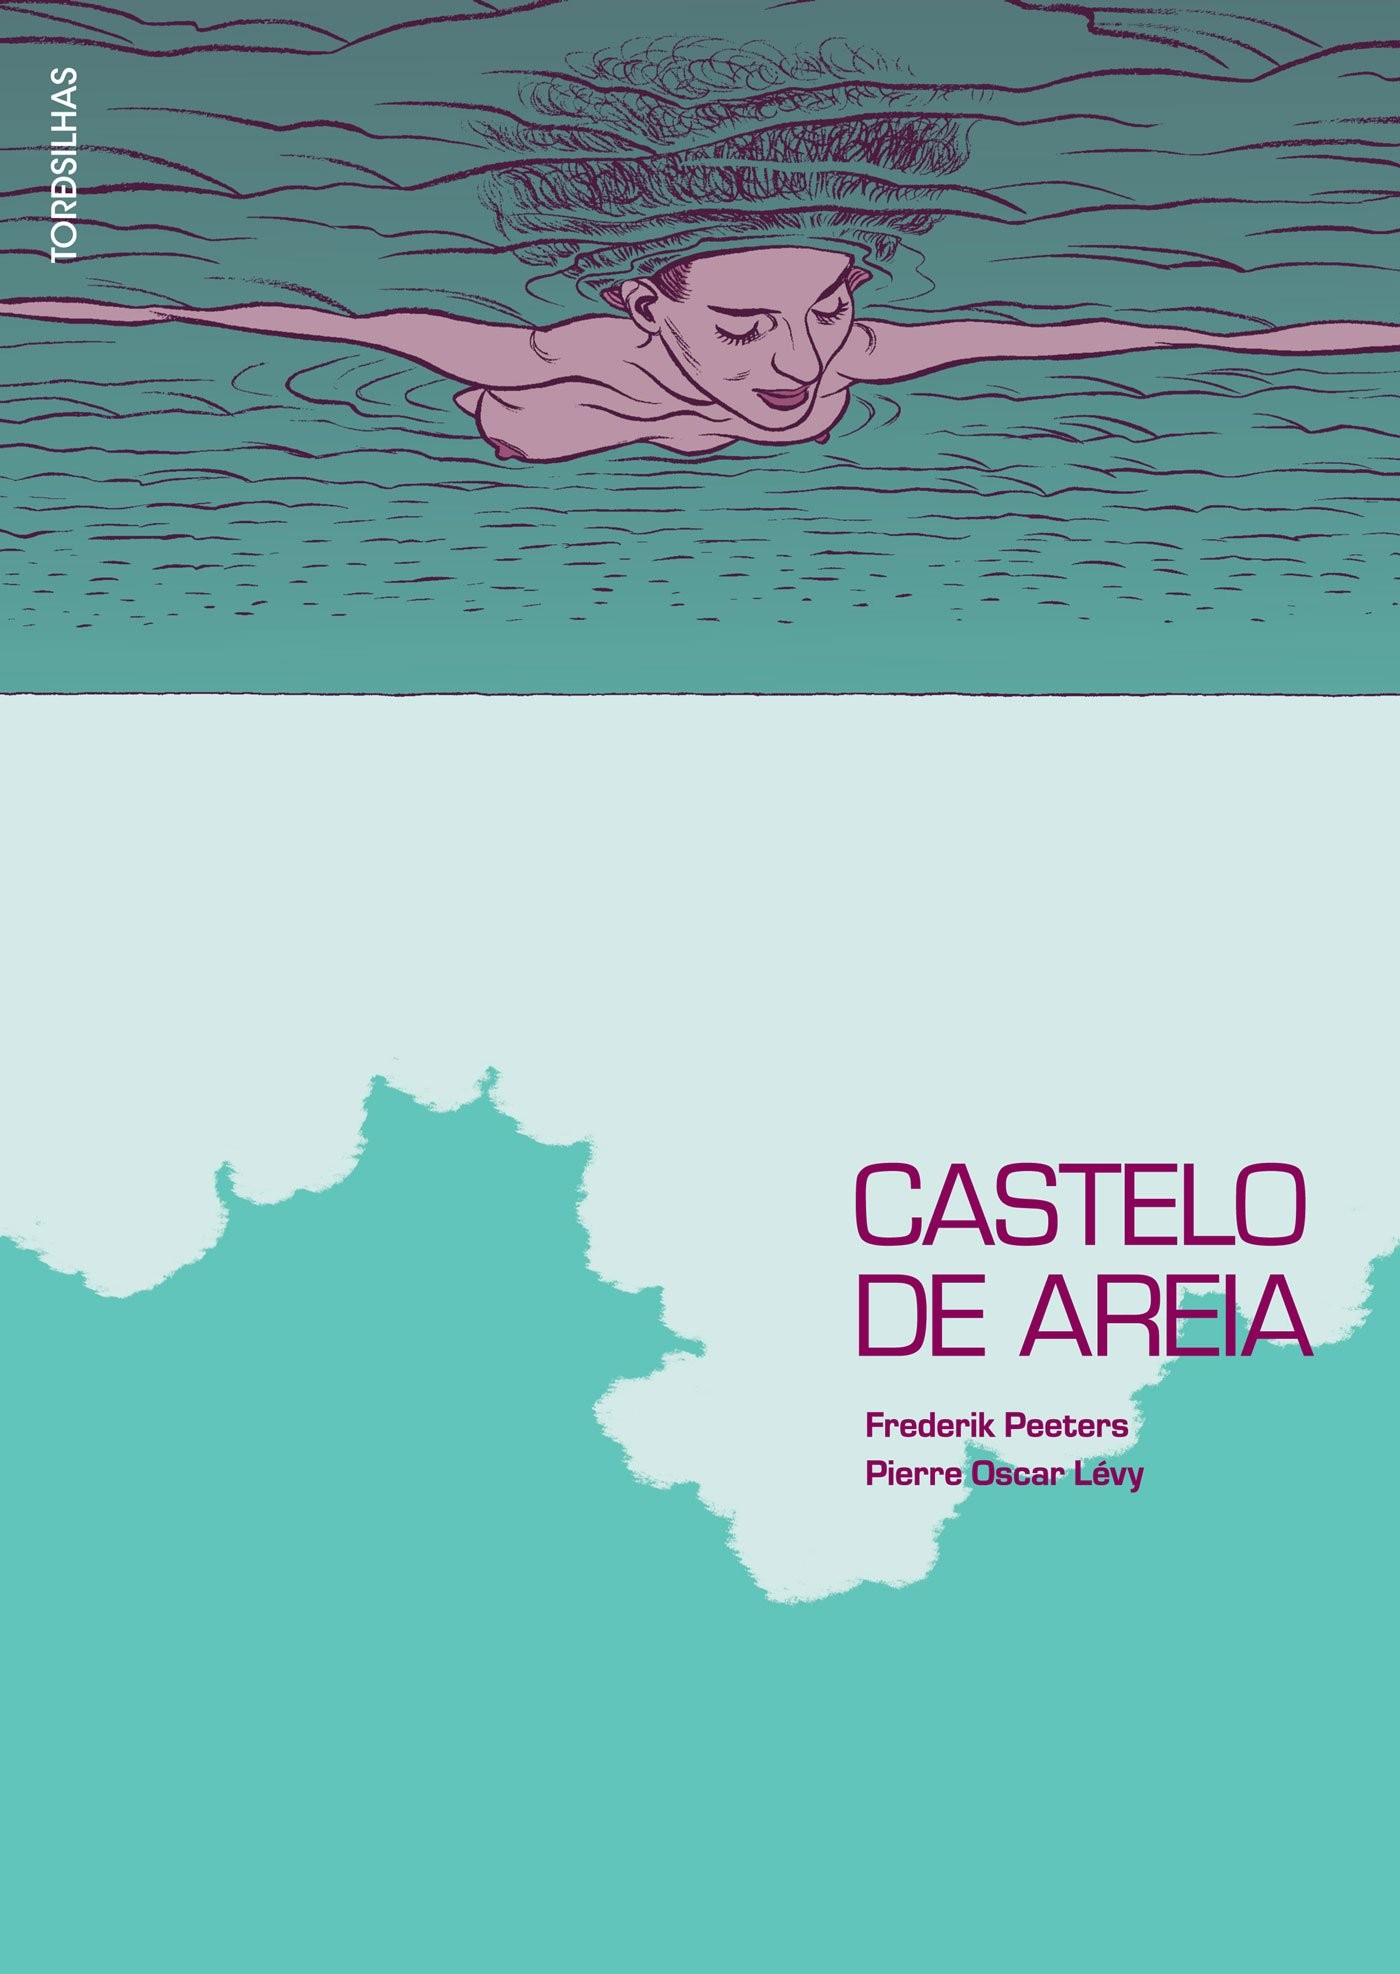 A capa da HQ Castelo de Areia, obra que inspirou Old (2021), de M. Night Shyamalan (Foto: Reprodução)